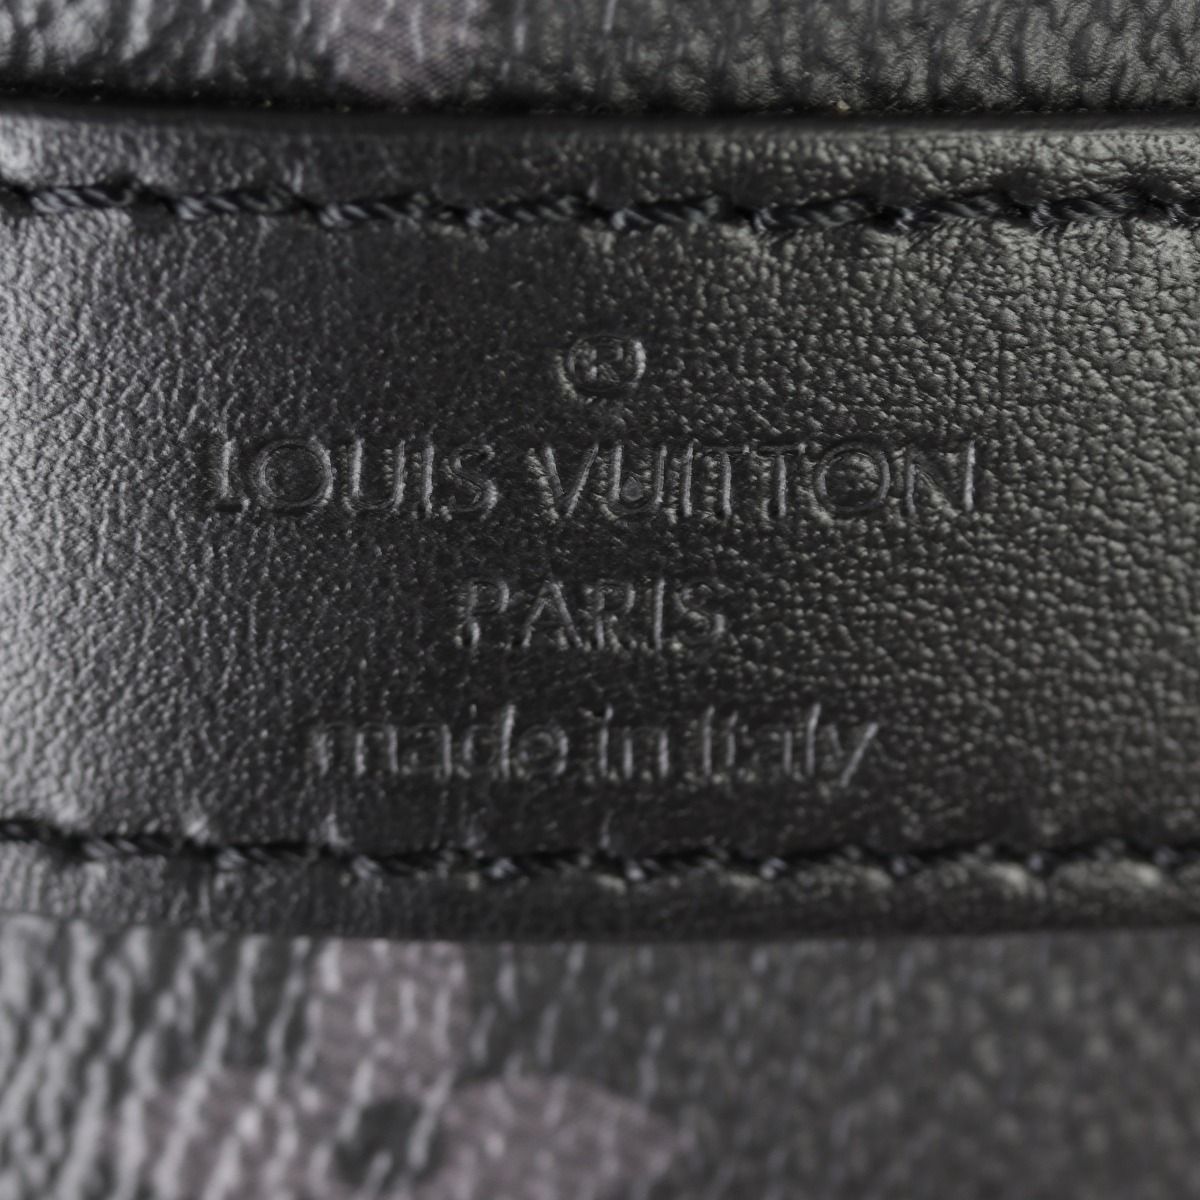 Louis Vuitton Monogram Eclipse Keepall Bandoulière 50